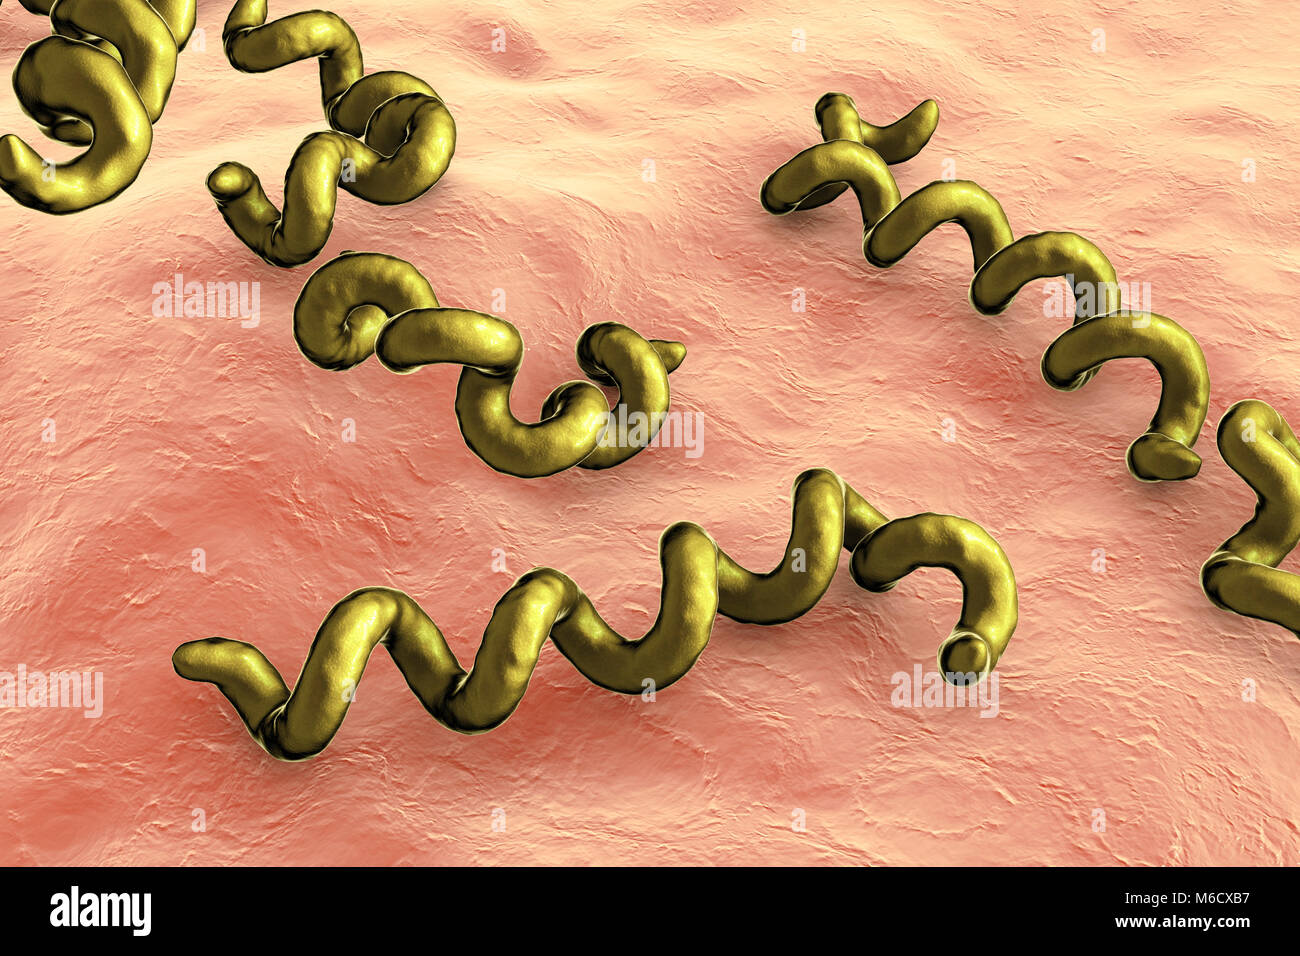 Computer illustrazione dei batteri spirochaete Treponema pallidum, che  causa la sifilide. La sifilide è di solito sessualmente trasmesse, ma può  anche passare da un virus per donna incinta al suo bambino (Sifilide